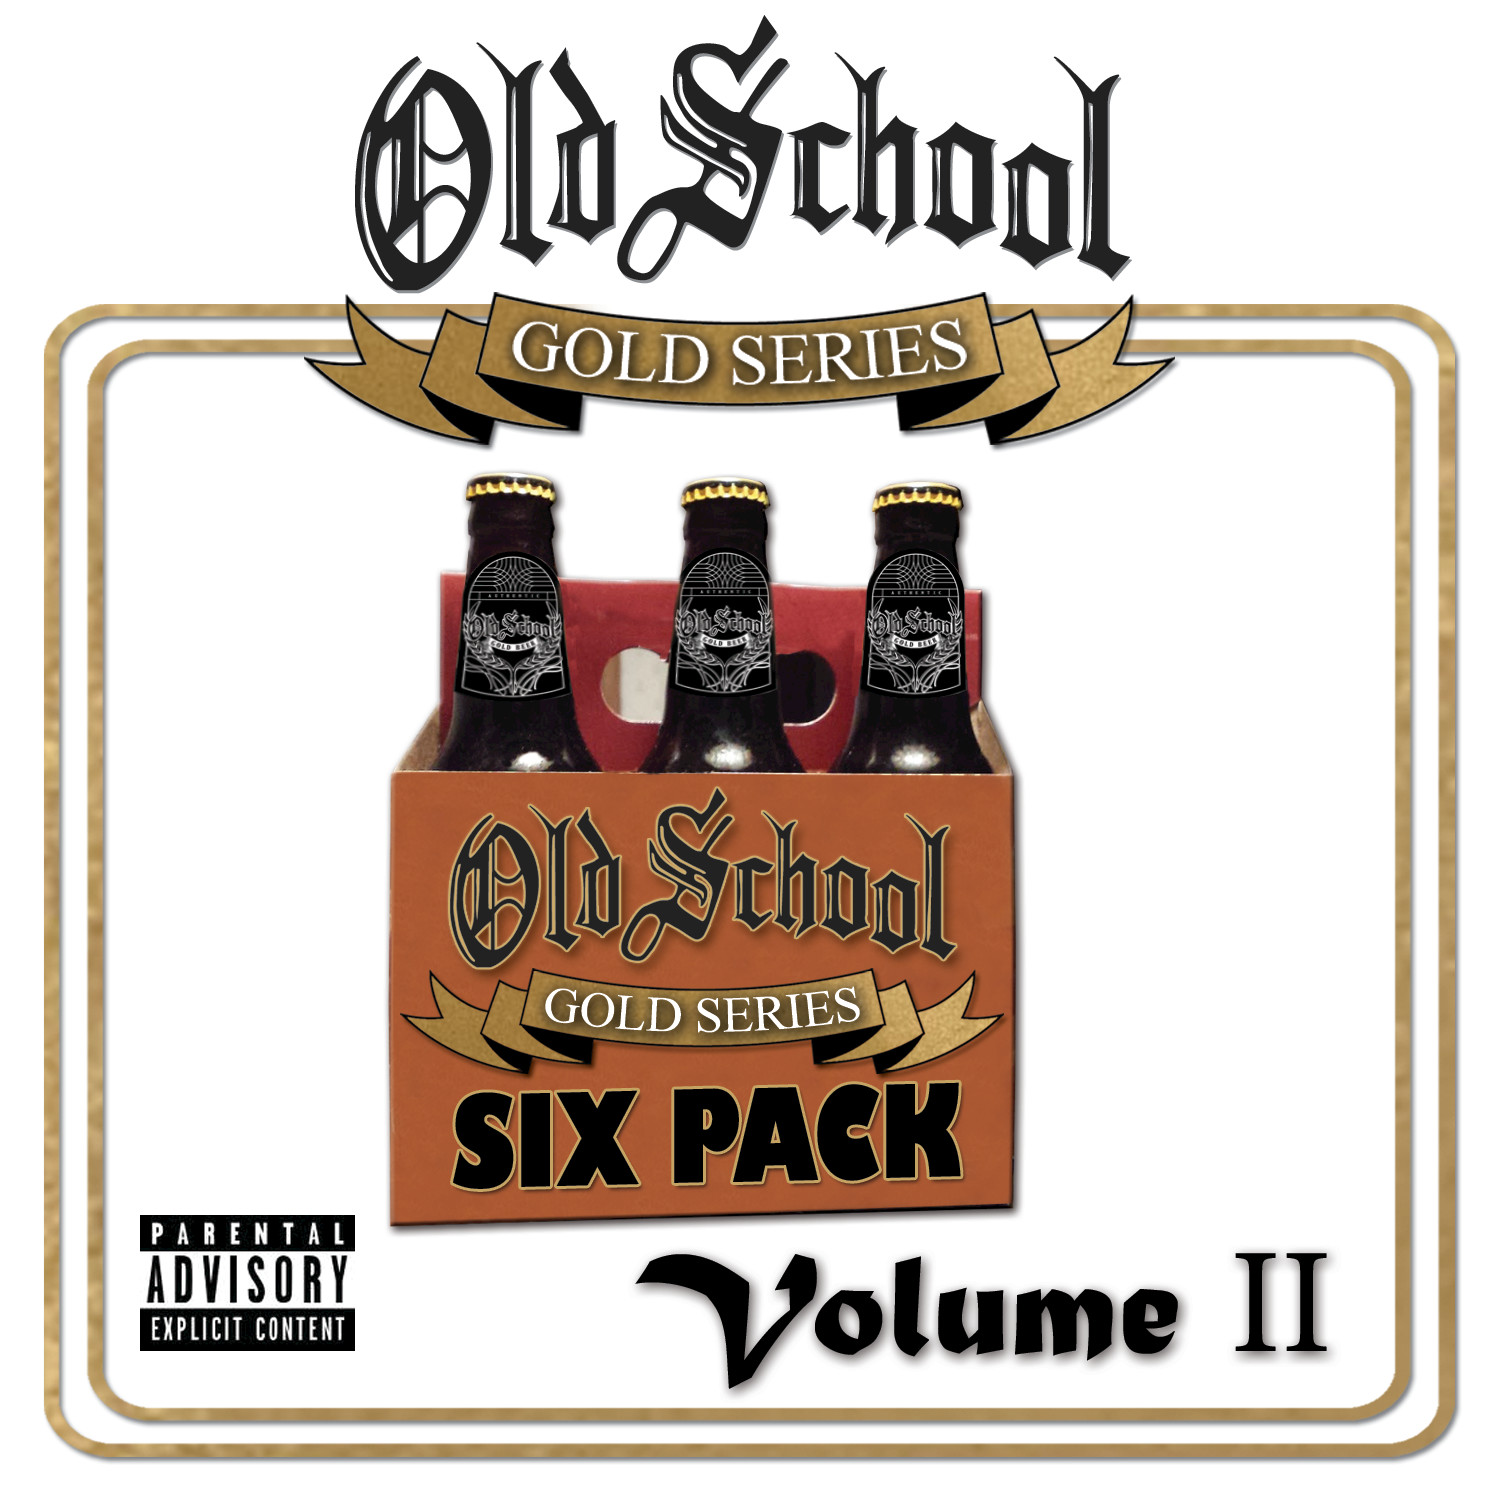 Old School Gold Series Six Pack Volume II